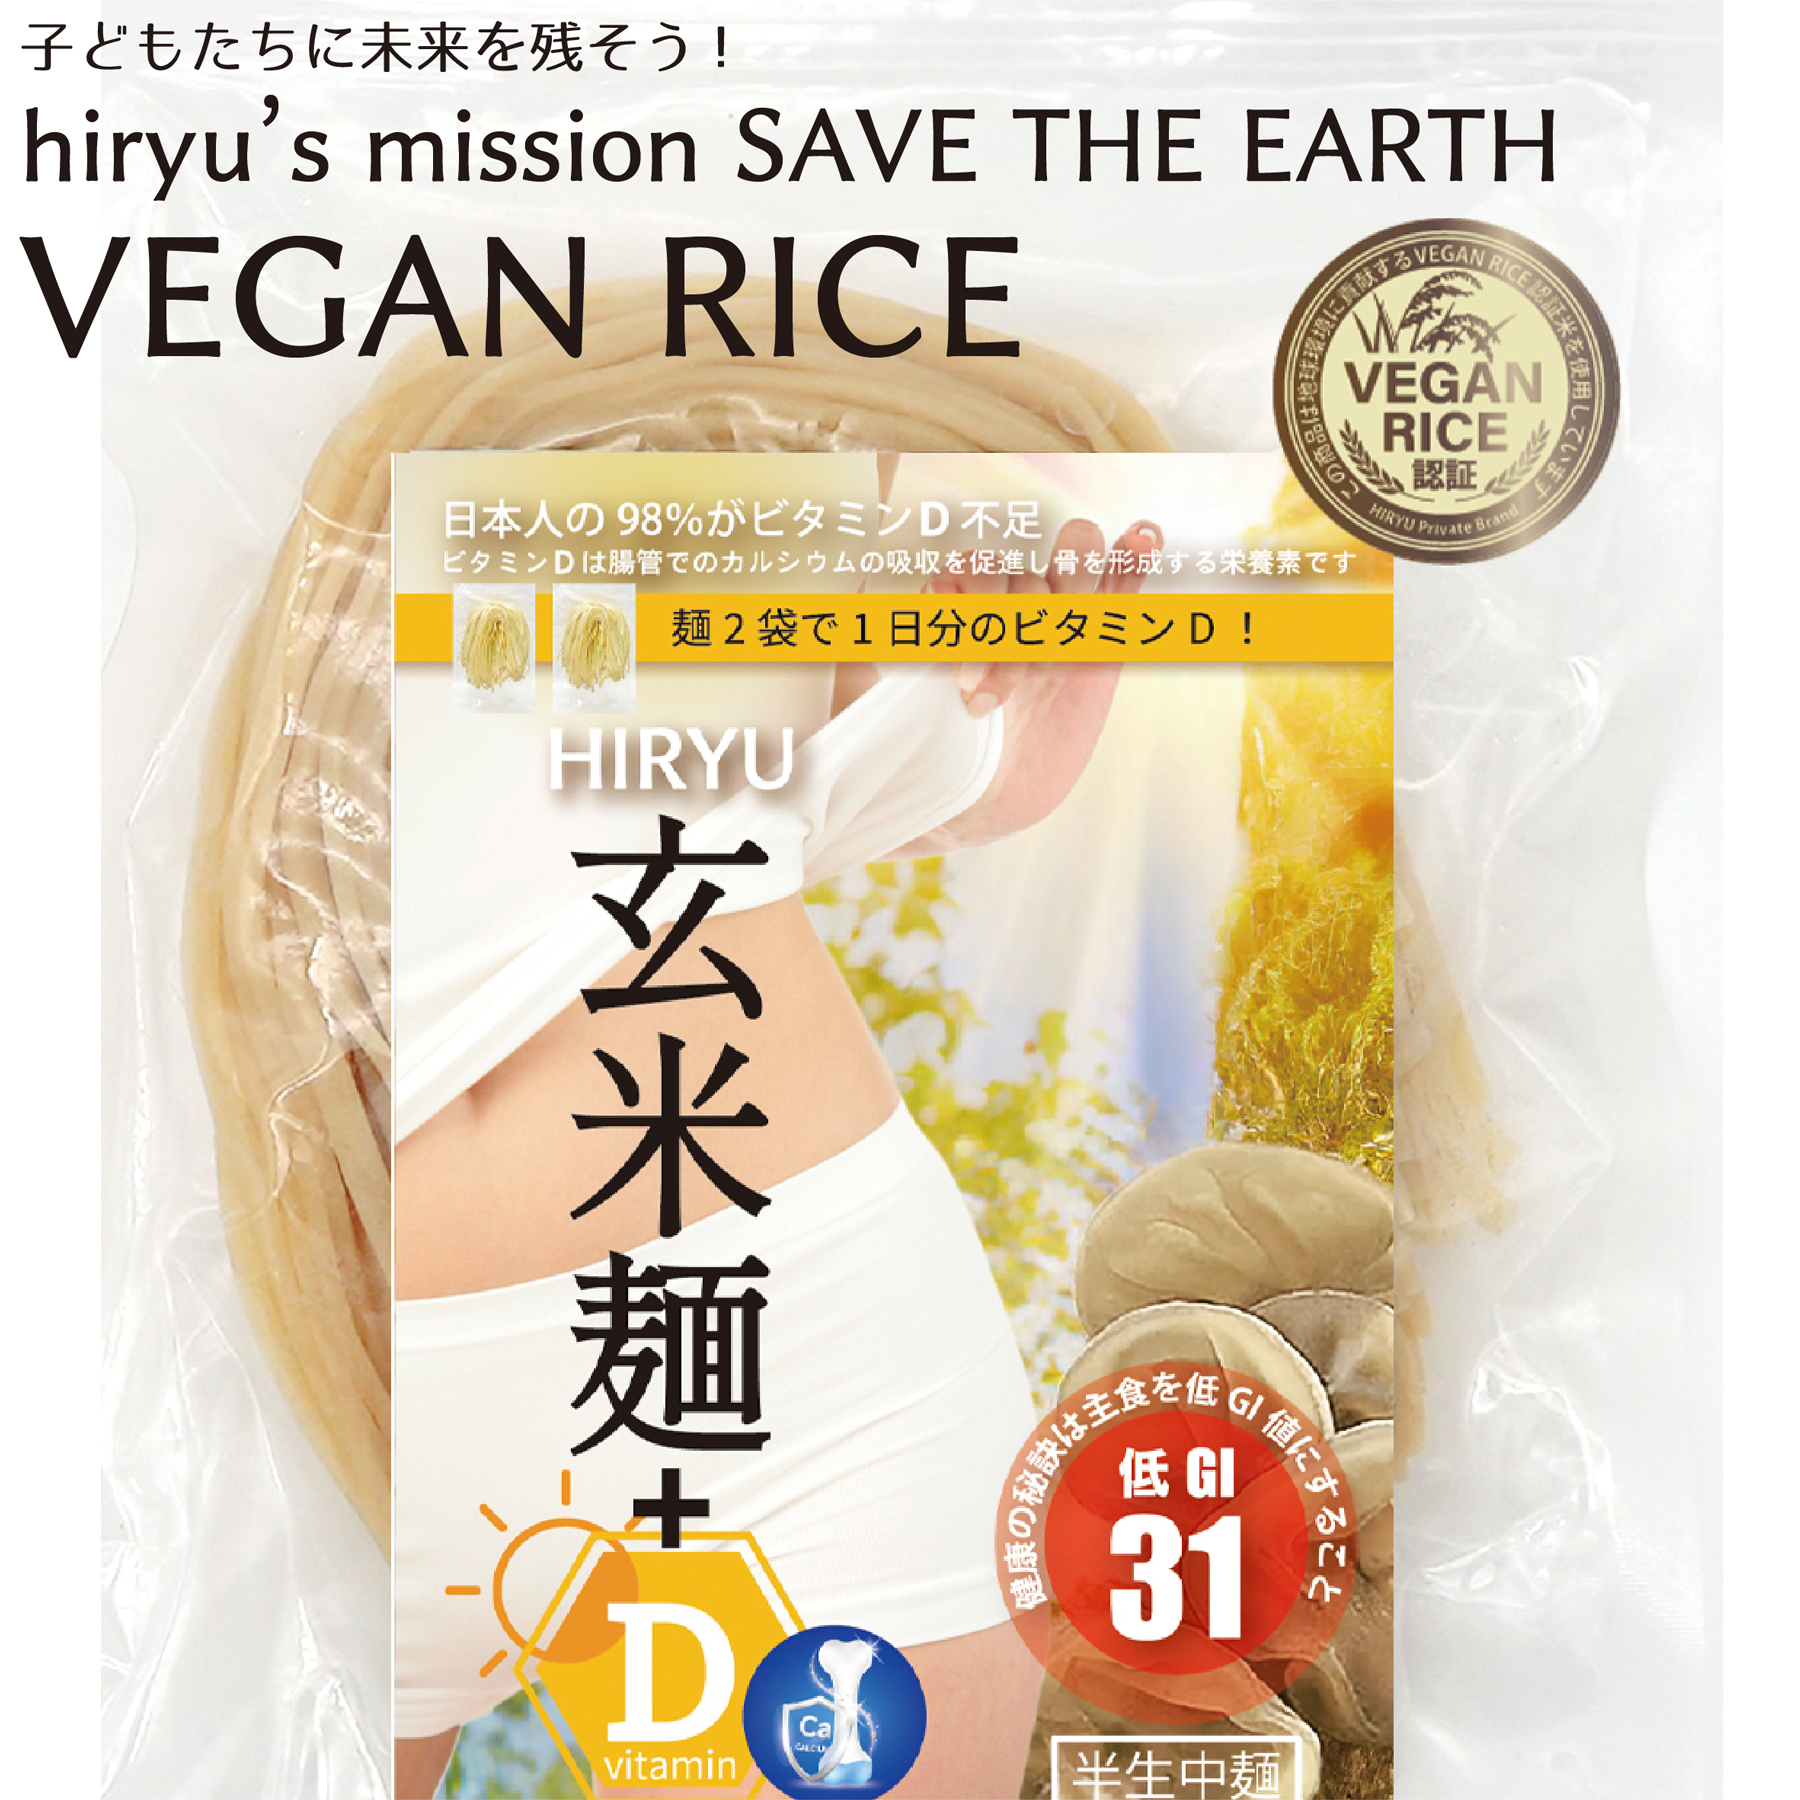 玄米麺+D  中麺 半生 農薬・肥料不使用 GI値31  VEGAN RICE